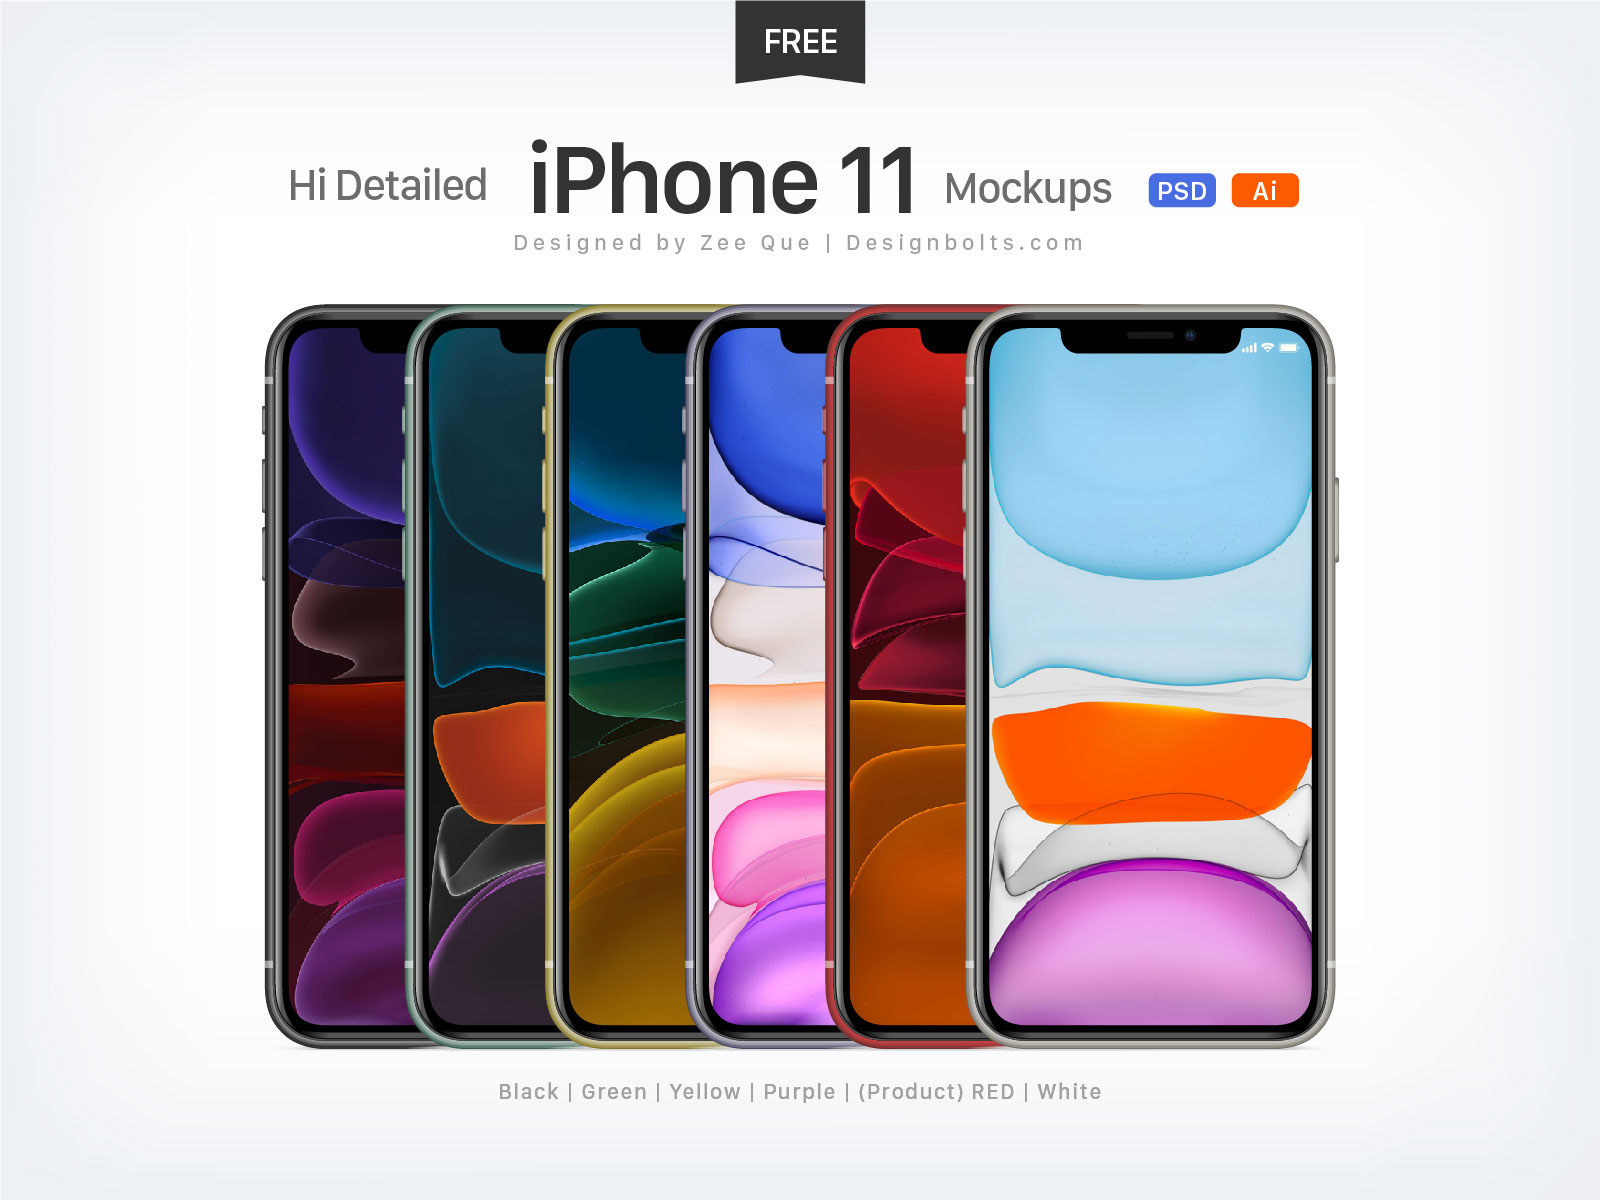 Free-iPhone-11-Mockup-PSD-Ai-1